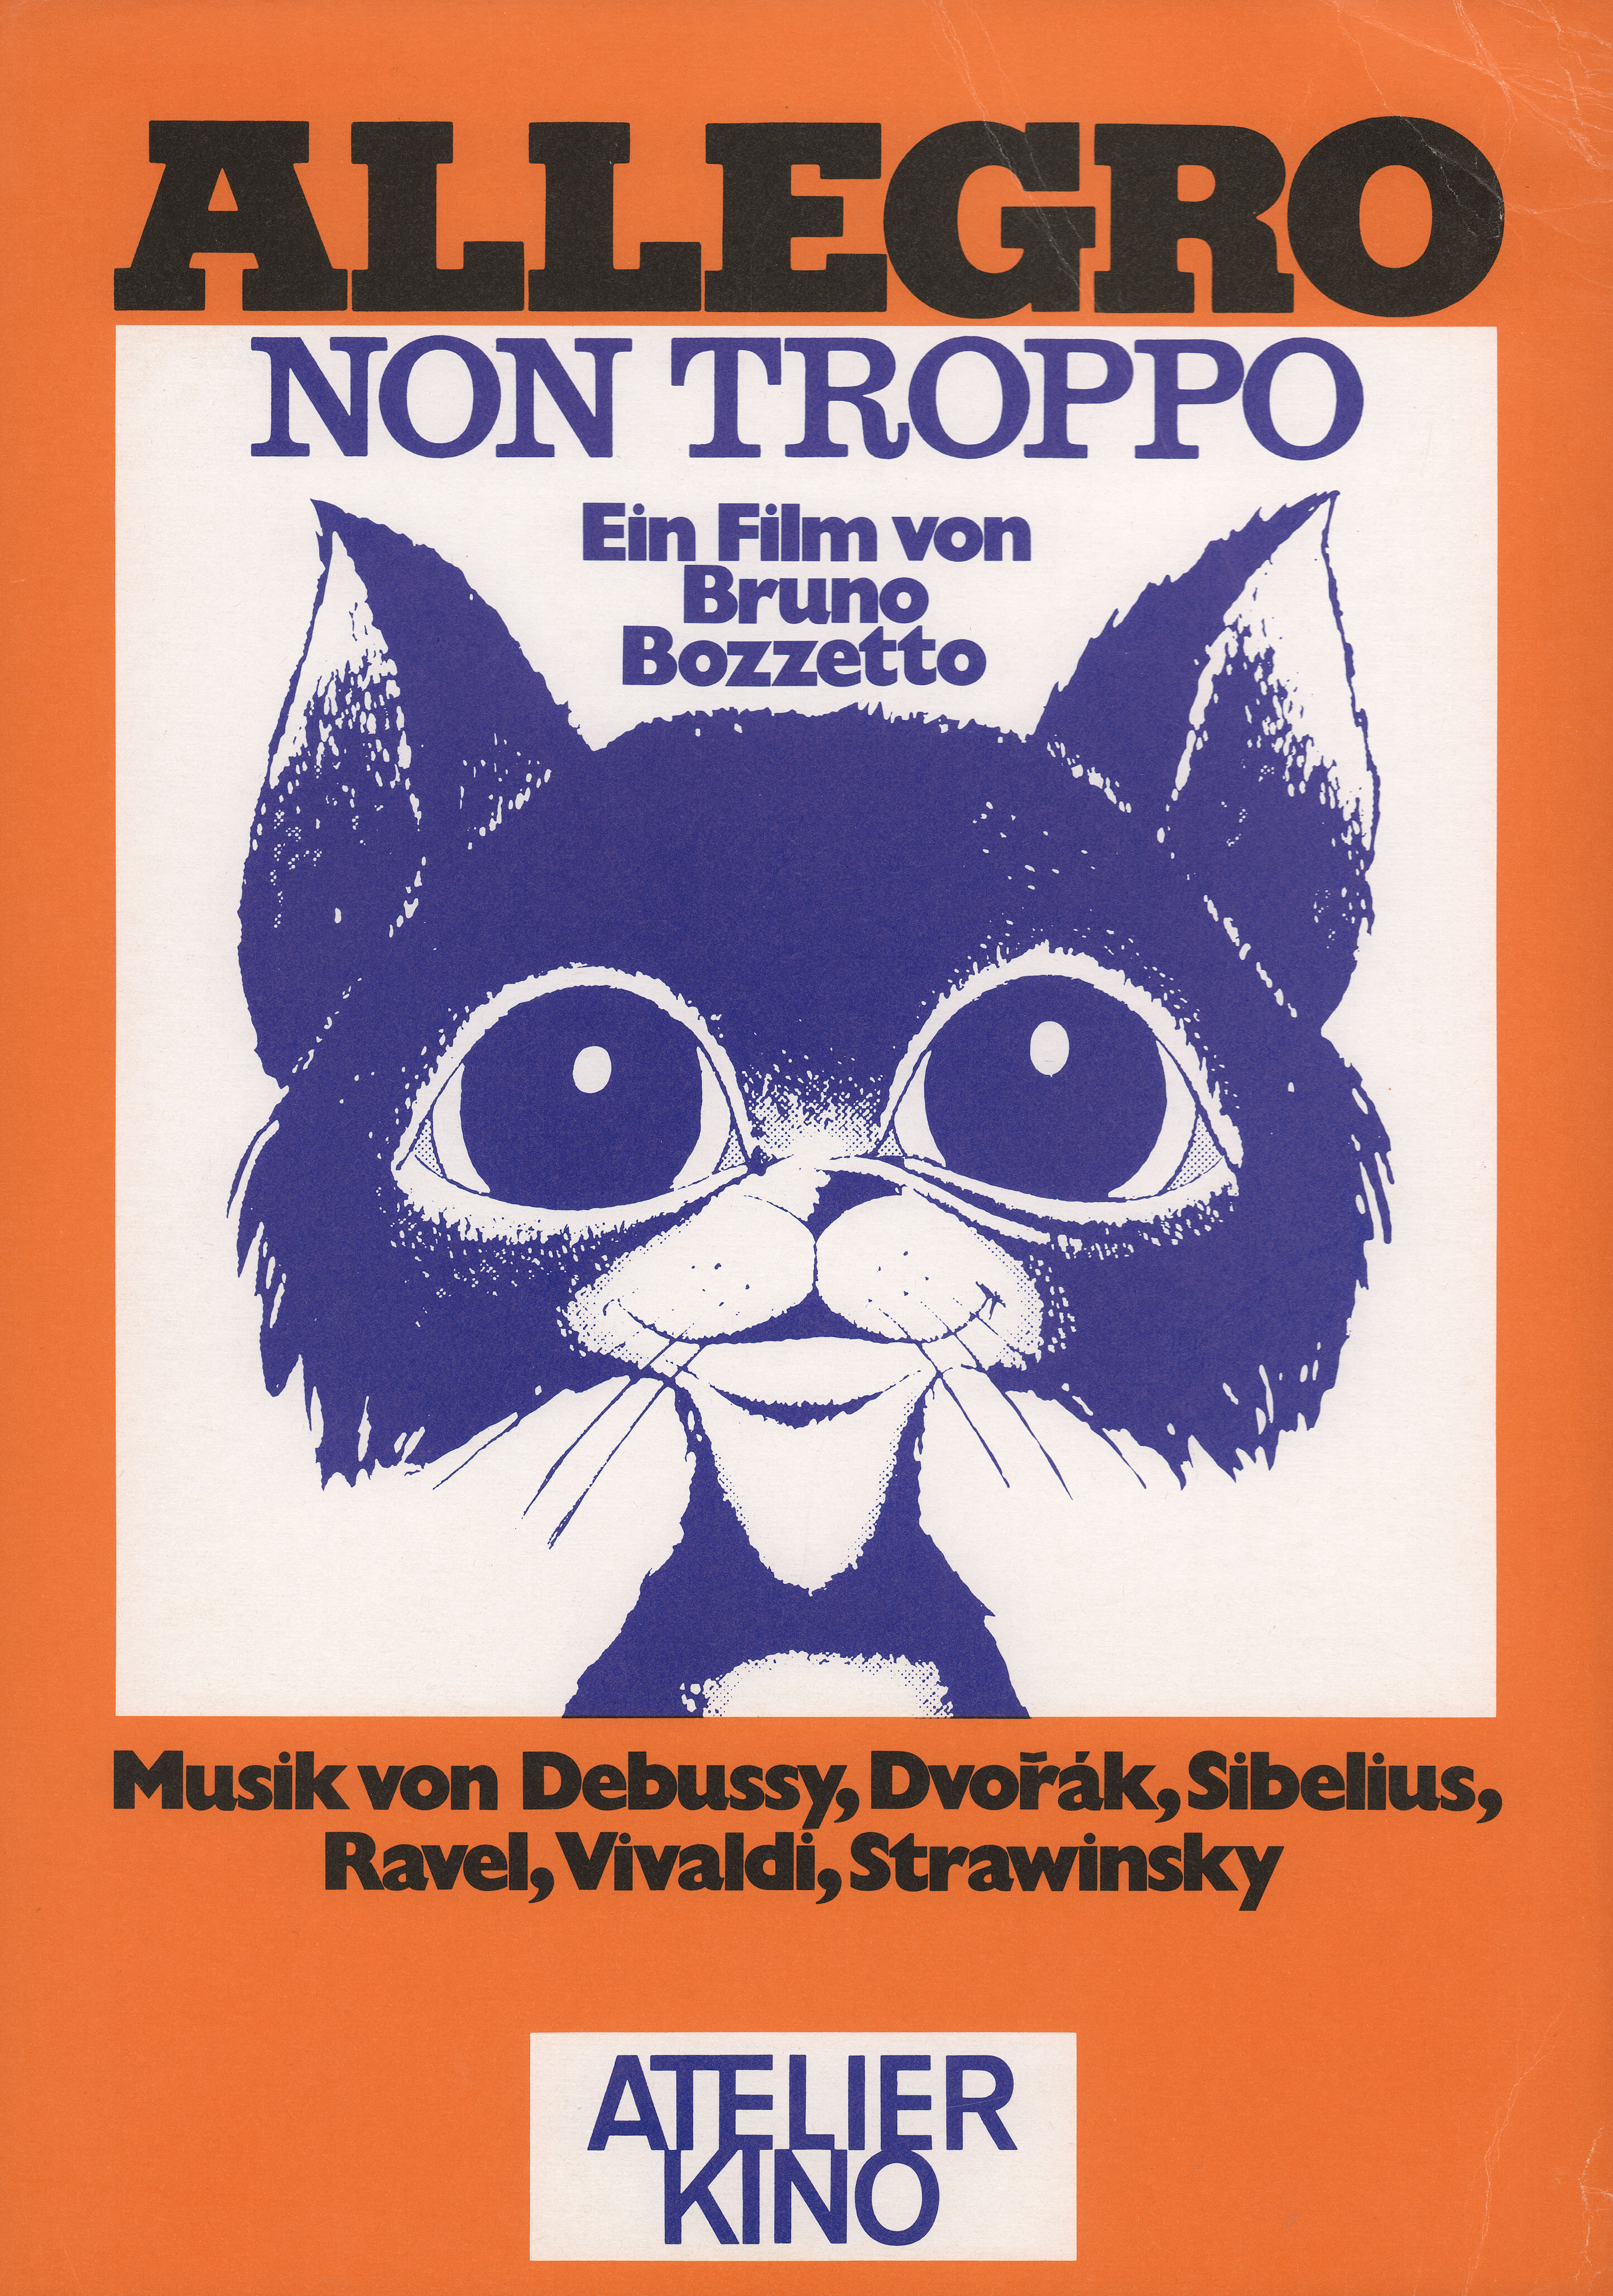 Не очень весело (Allegro non troppo, 1976), режиссёр Бруно Боццетто, иллюстрированный постер к фильму (Германия, 1976 год)